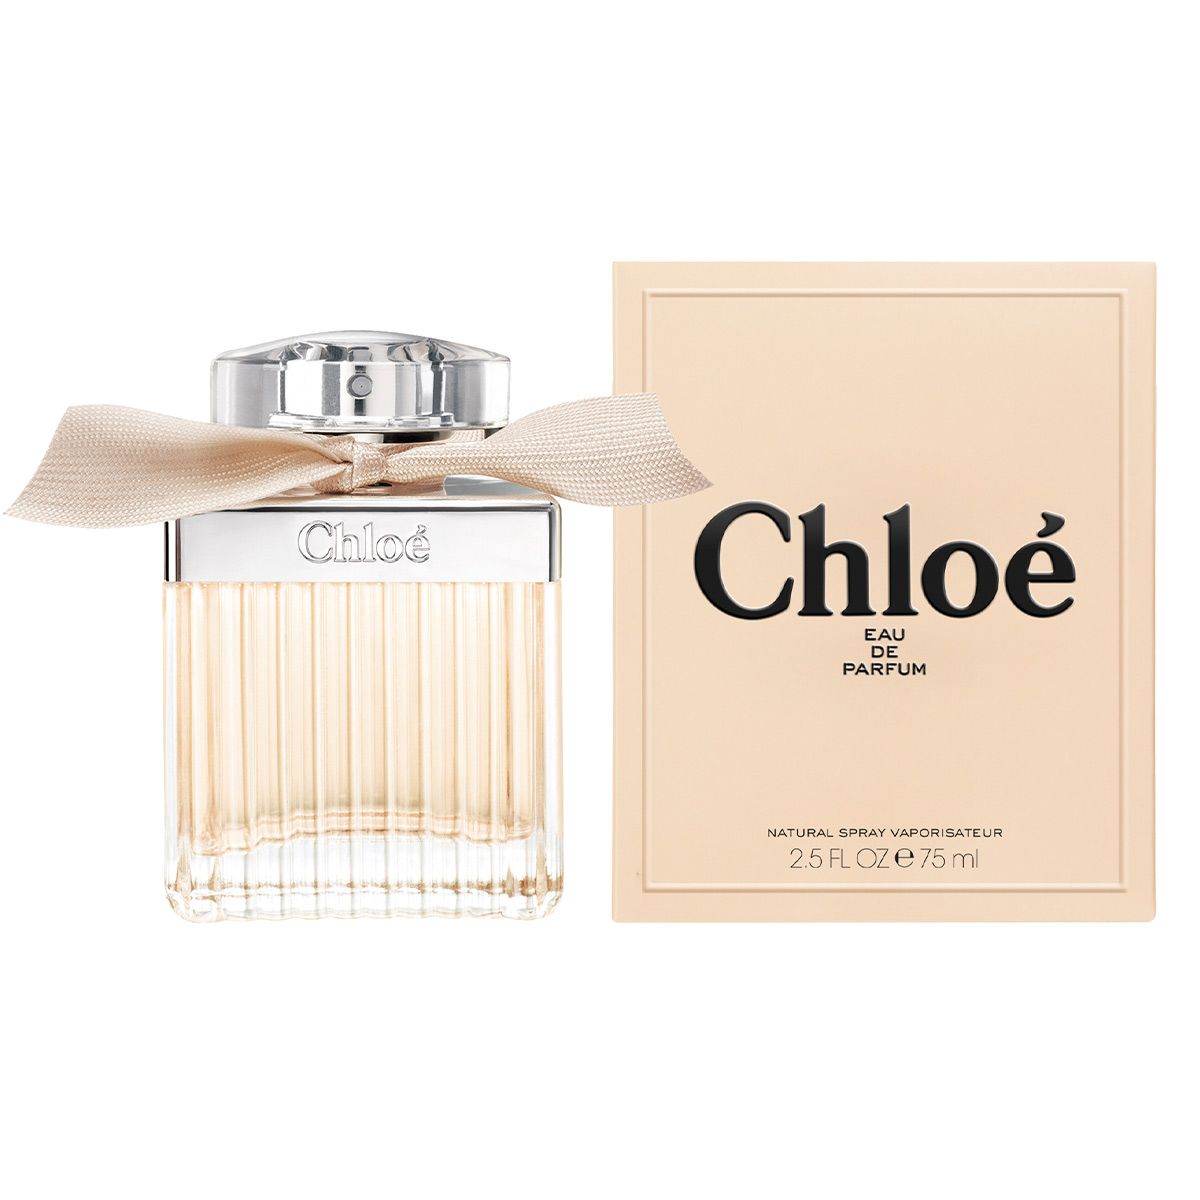  Chloe Eau de Parfum 